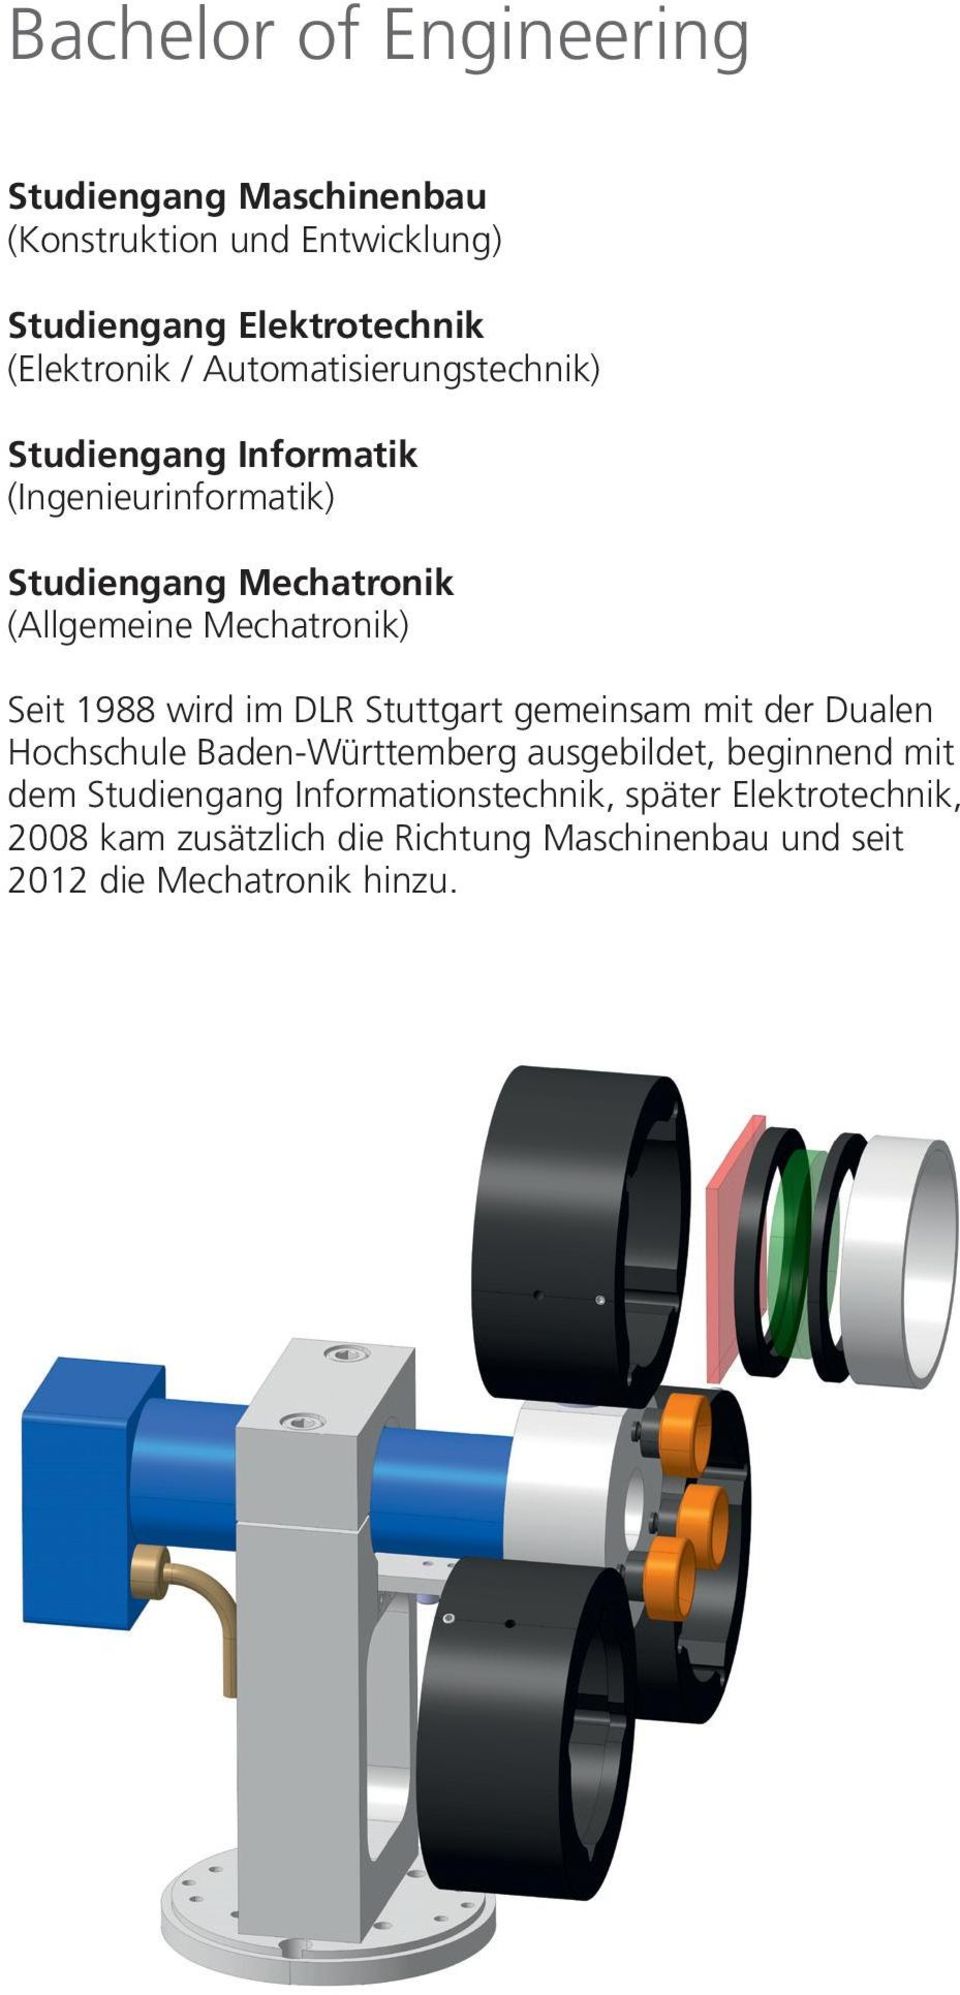 1988 wird im DLR Stuttgart gemeinsam mit der Dualen Hochschule Baden-Württemberg ausgebildet, beginnend mit dem Studiengang